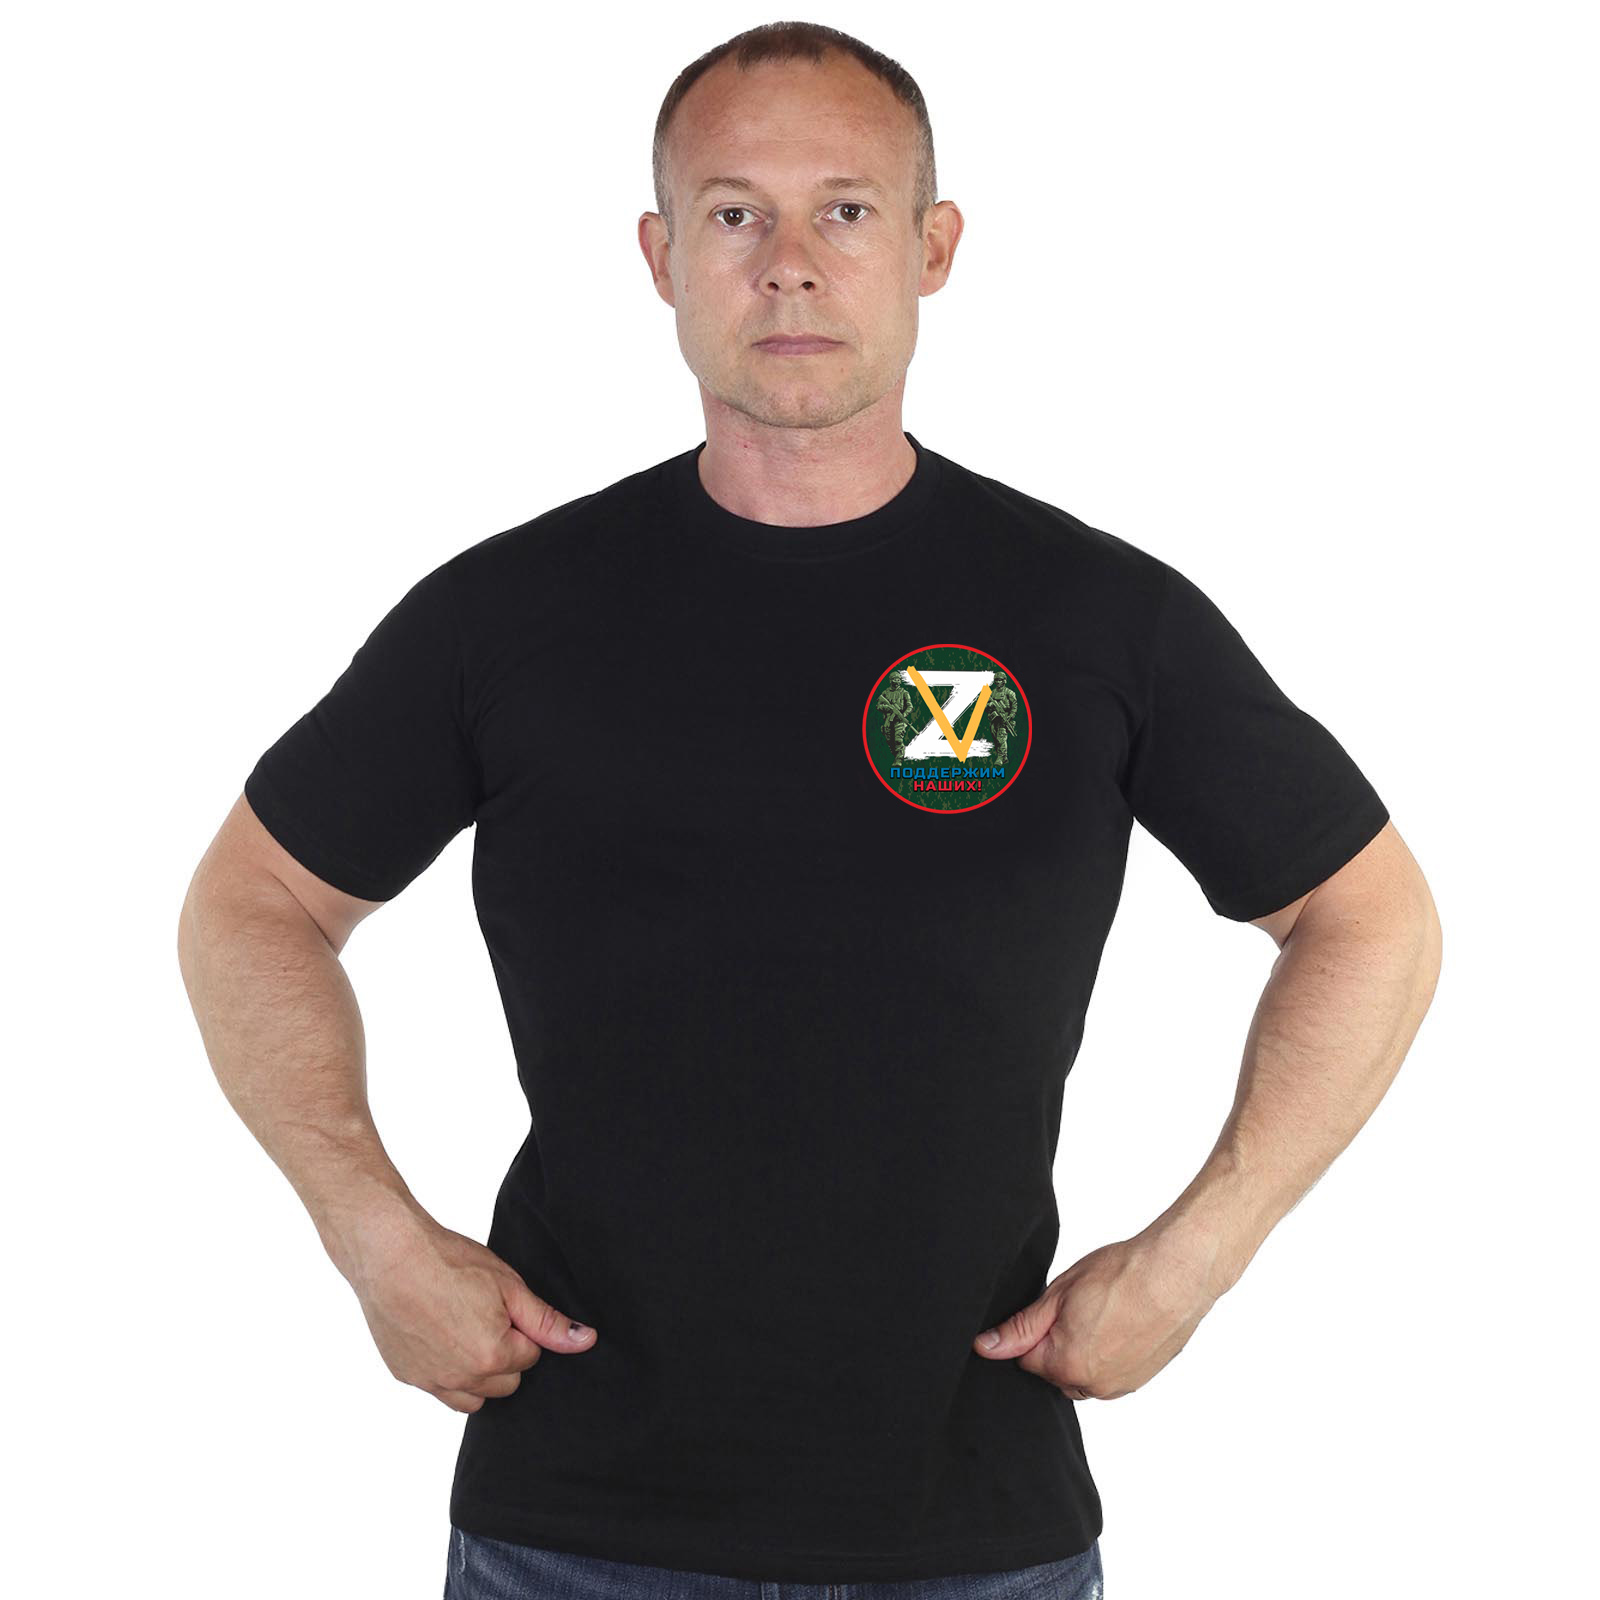 Недорогая мужская футболка с символикой Z V